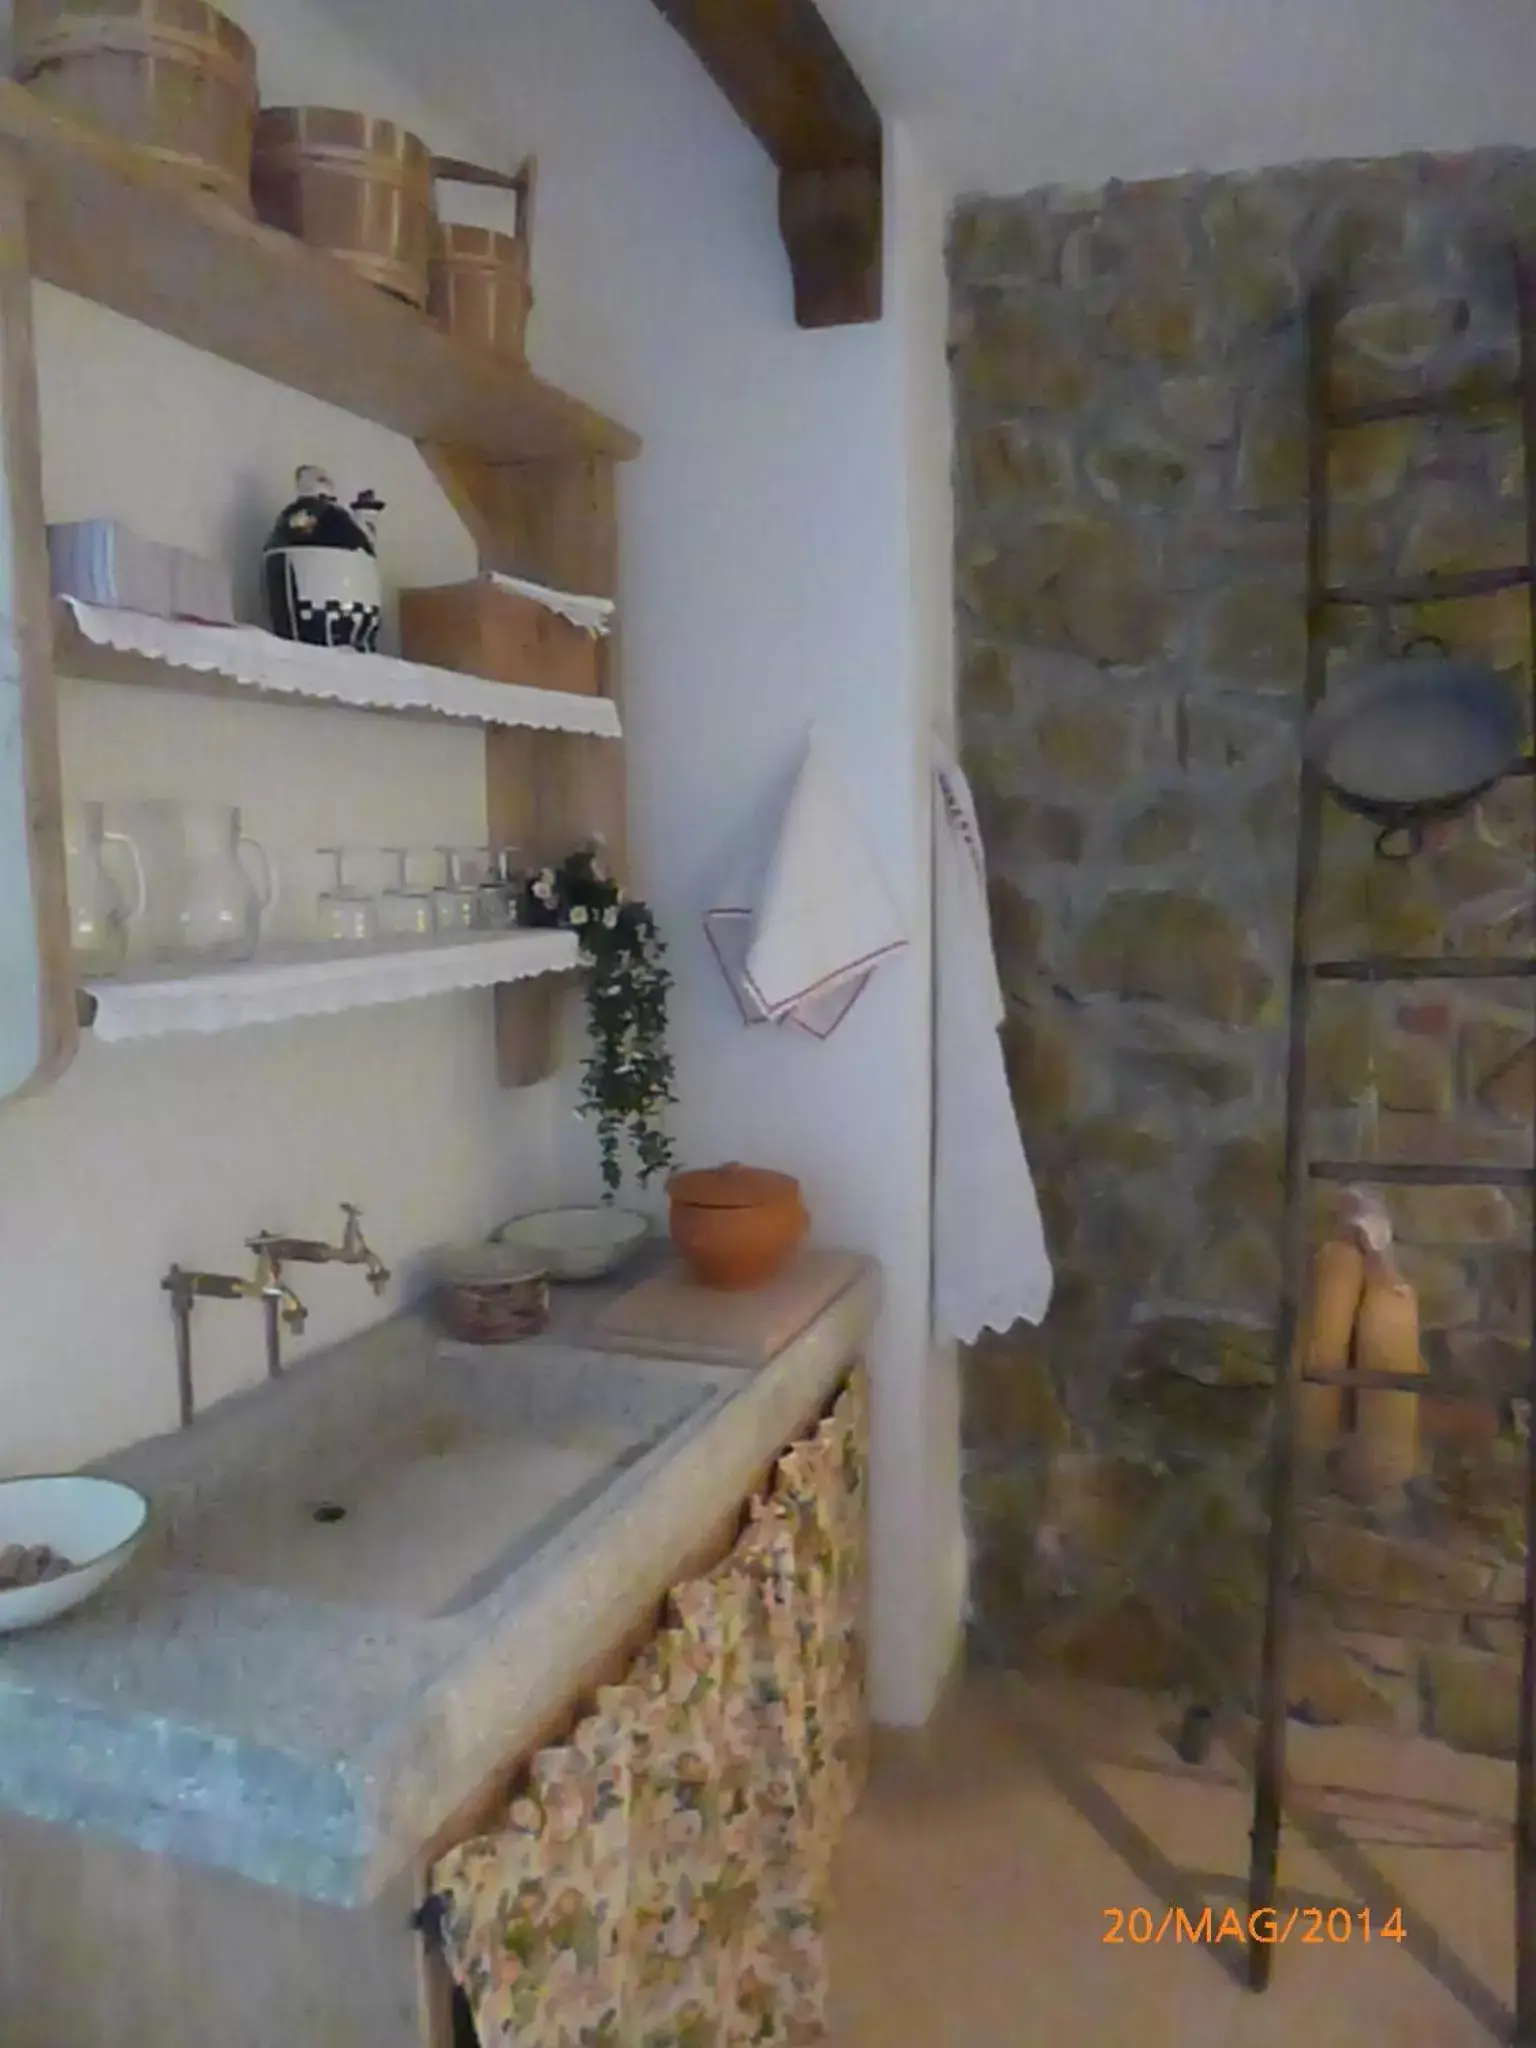 Decorative detail, Bathroom in Albergo La Foresteria